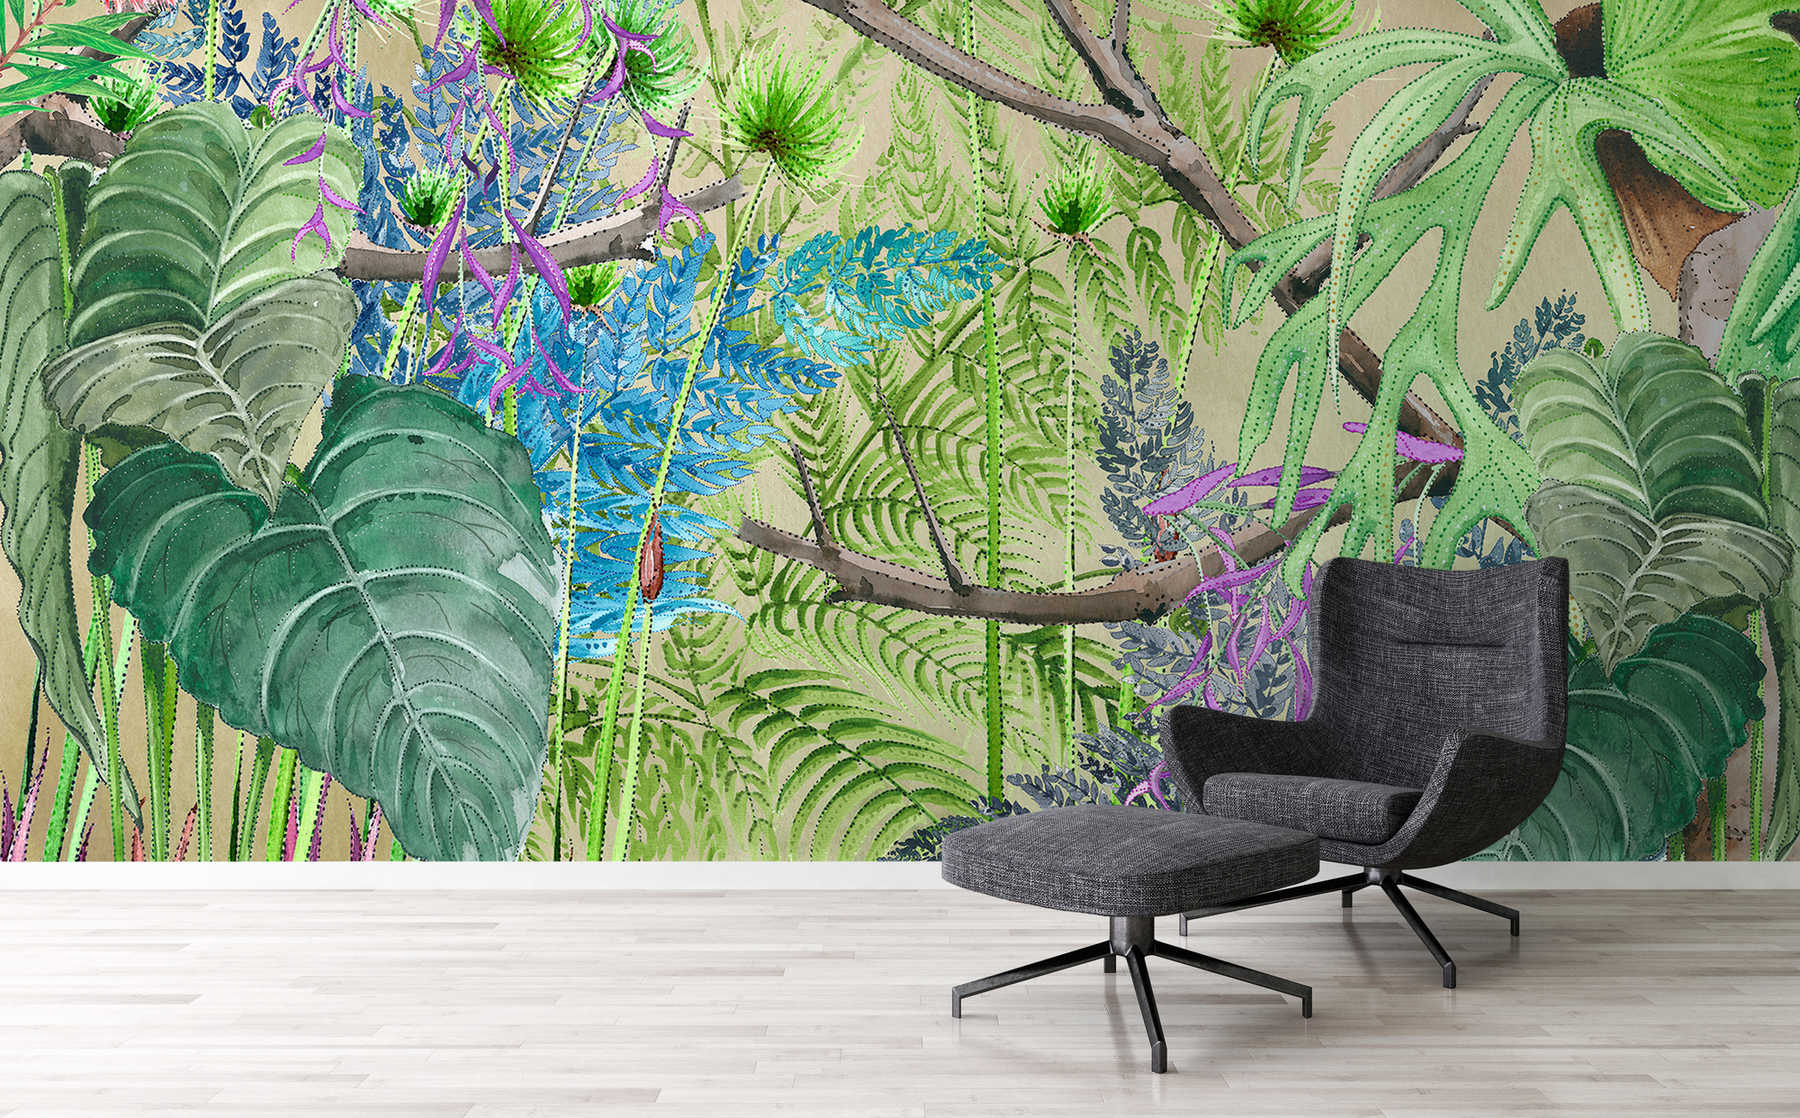             Dschungel Fototapete mit Blumen in Blau und Grün auf Matt Glattvlies
        